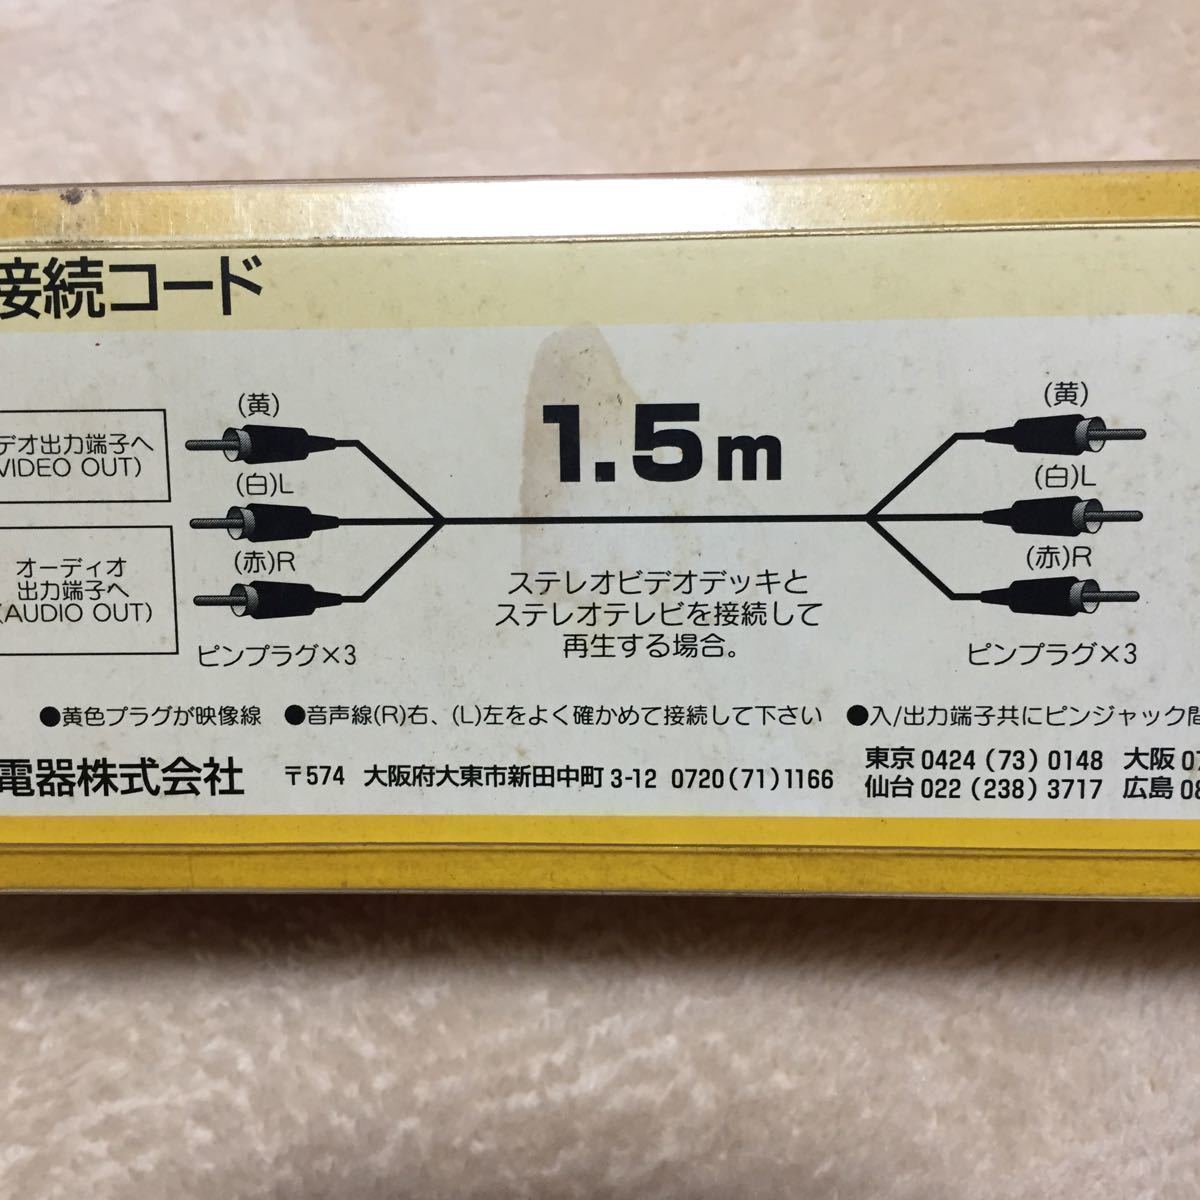 ELPA 日本製 RCAプラグ 1.5m 3色ケーブル 高純度OFC AVケーブル 24Kメッキピン AV 映像 音声ケーブル テレビ DVDプレーヤー 接続 同封歓迎_画像6